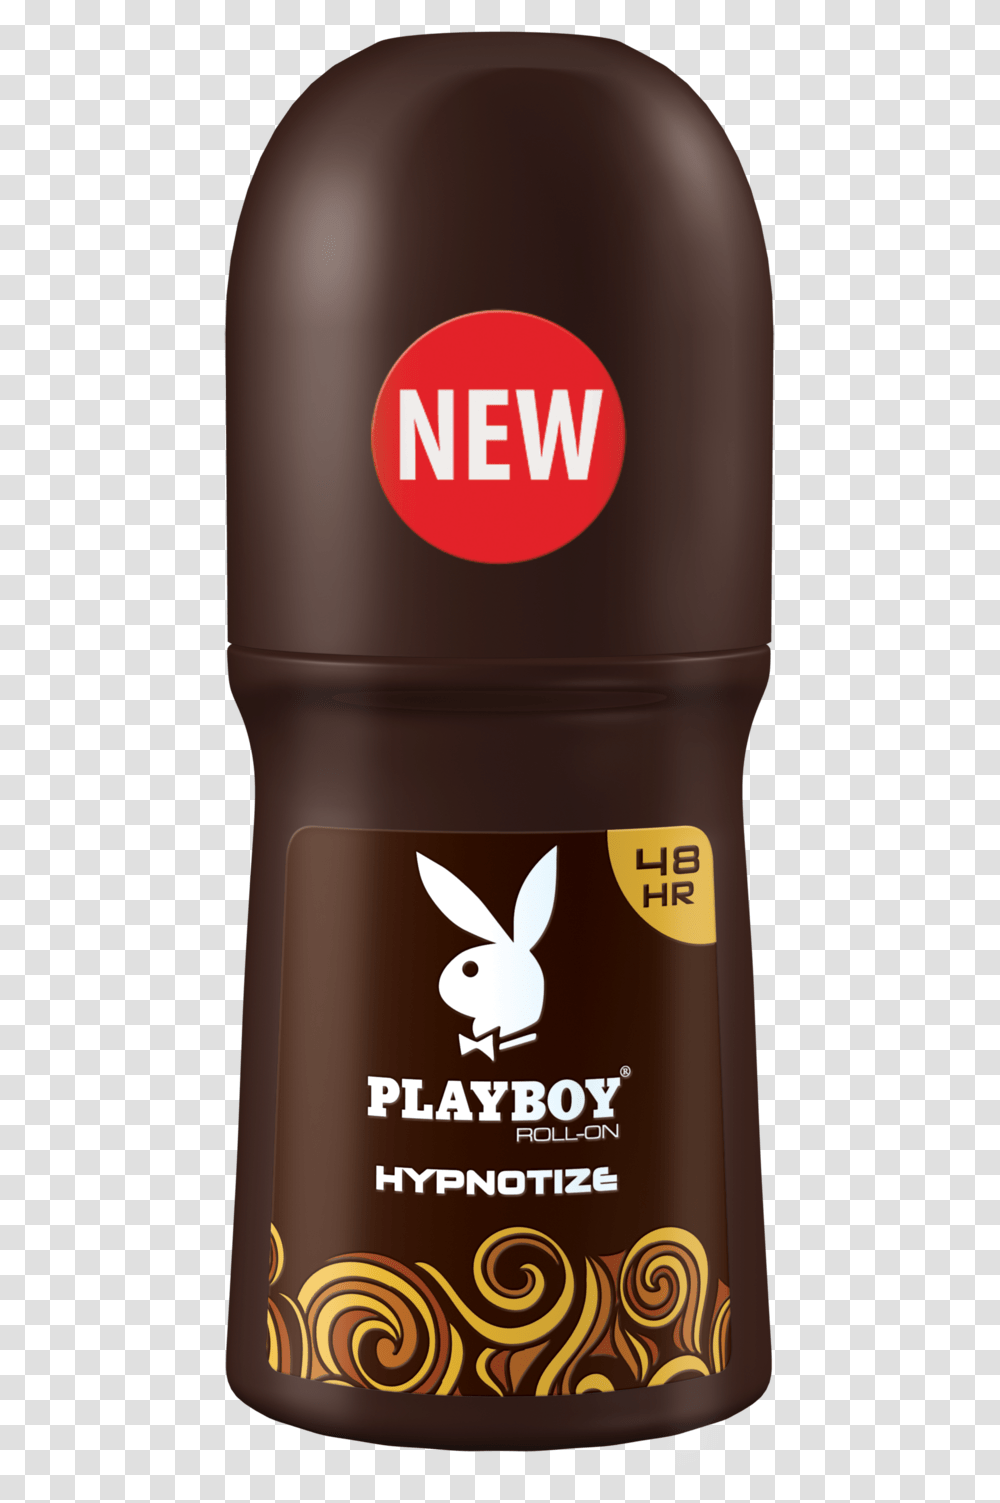 Playboy Roll Playboy Roll On Code Black, Bottle, Cylinder, Lager, Beer Transparent Png